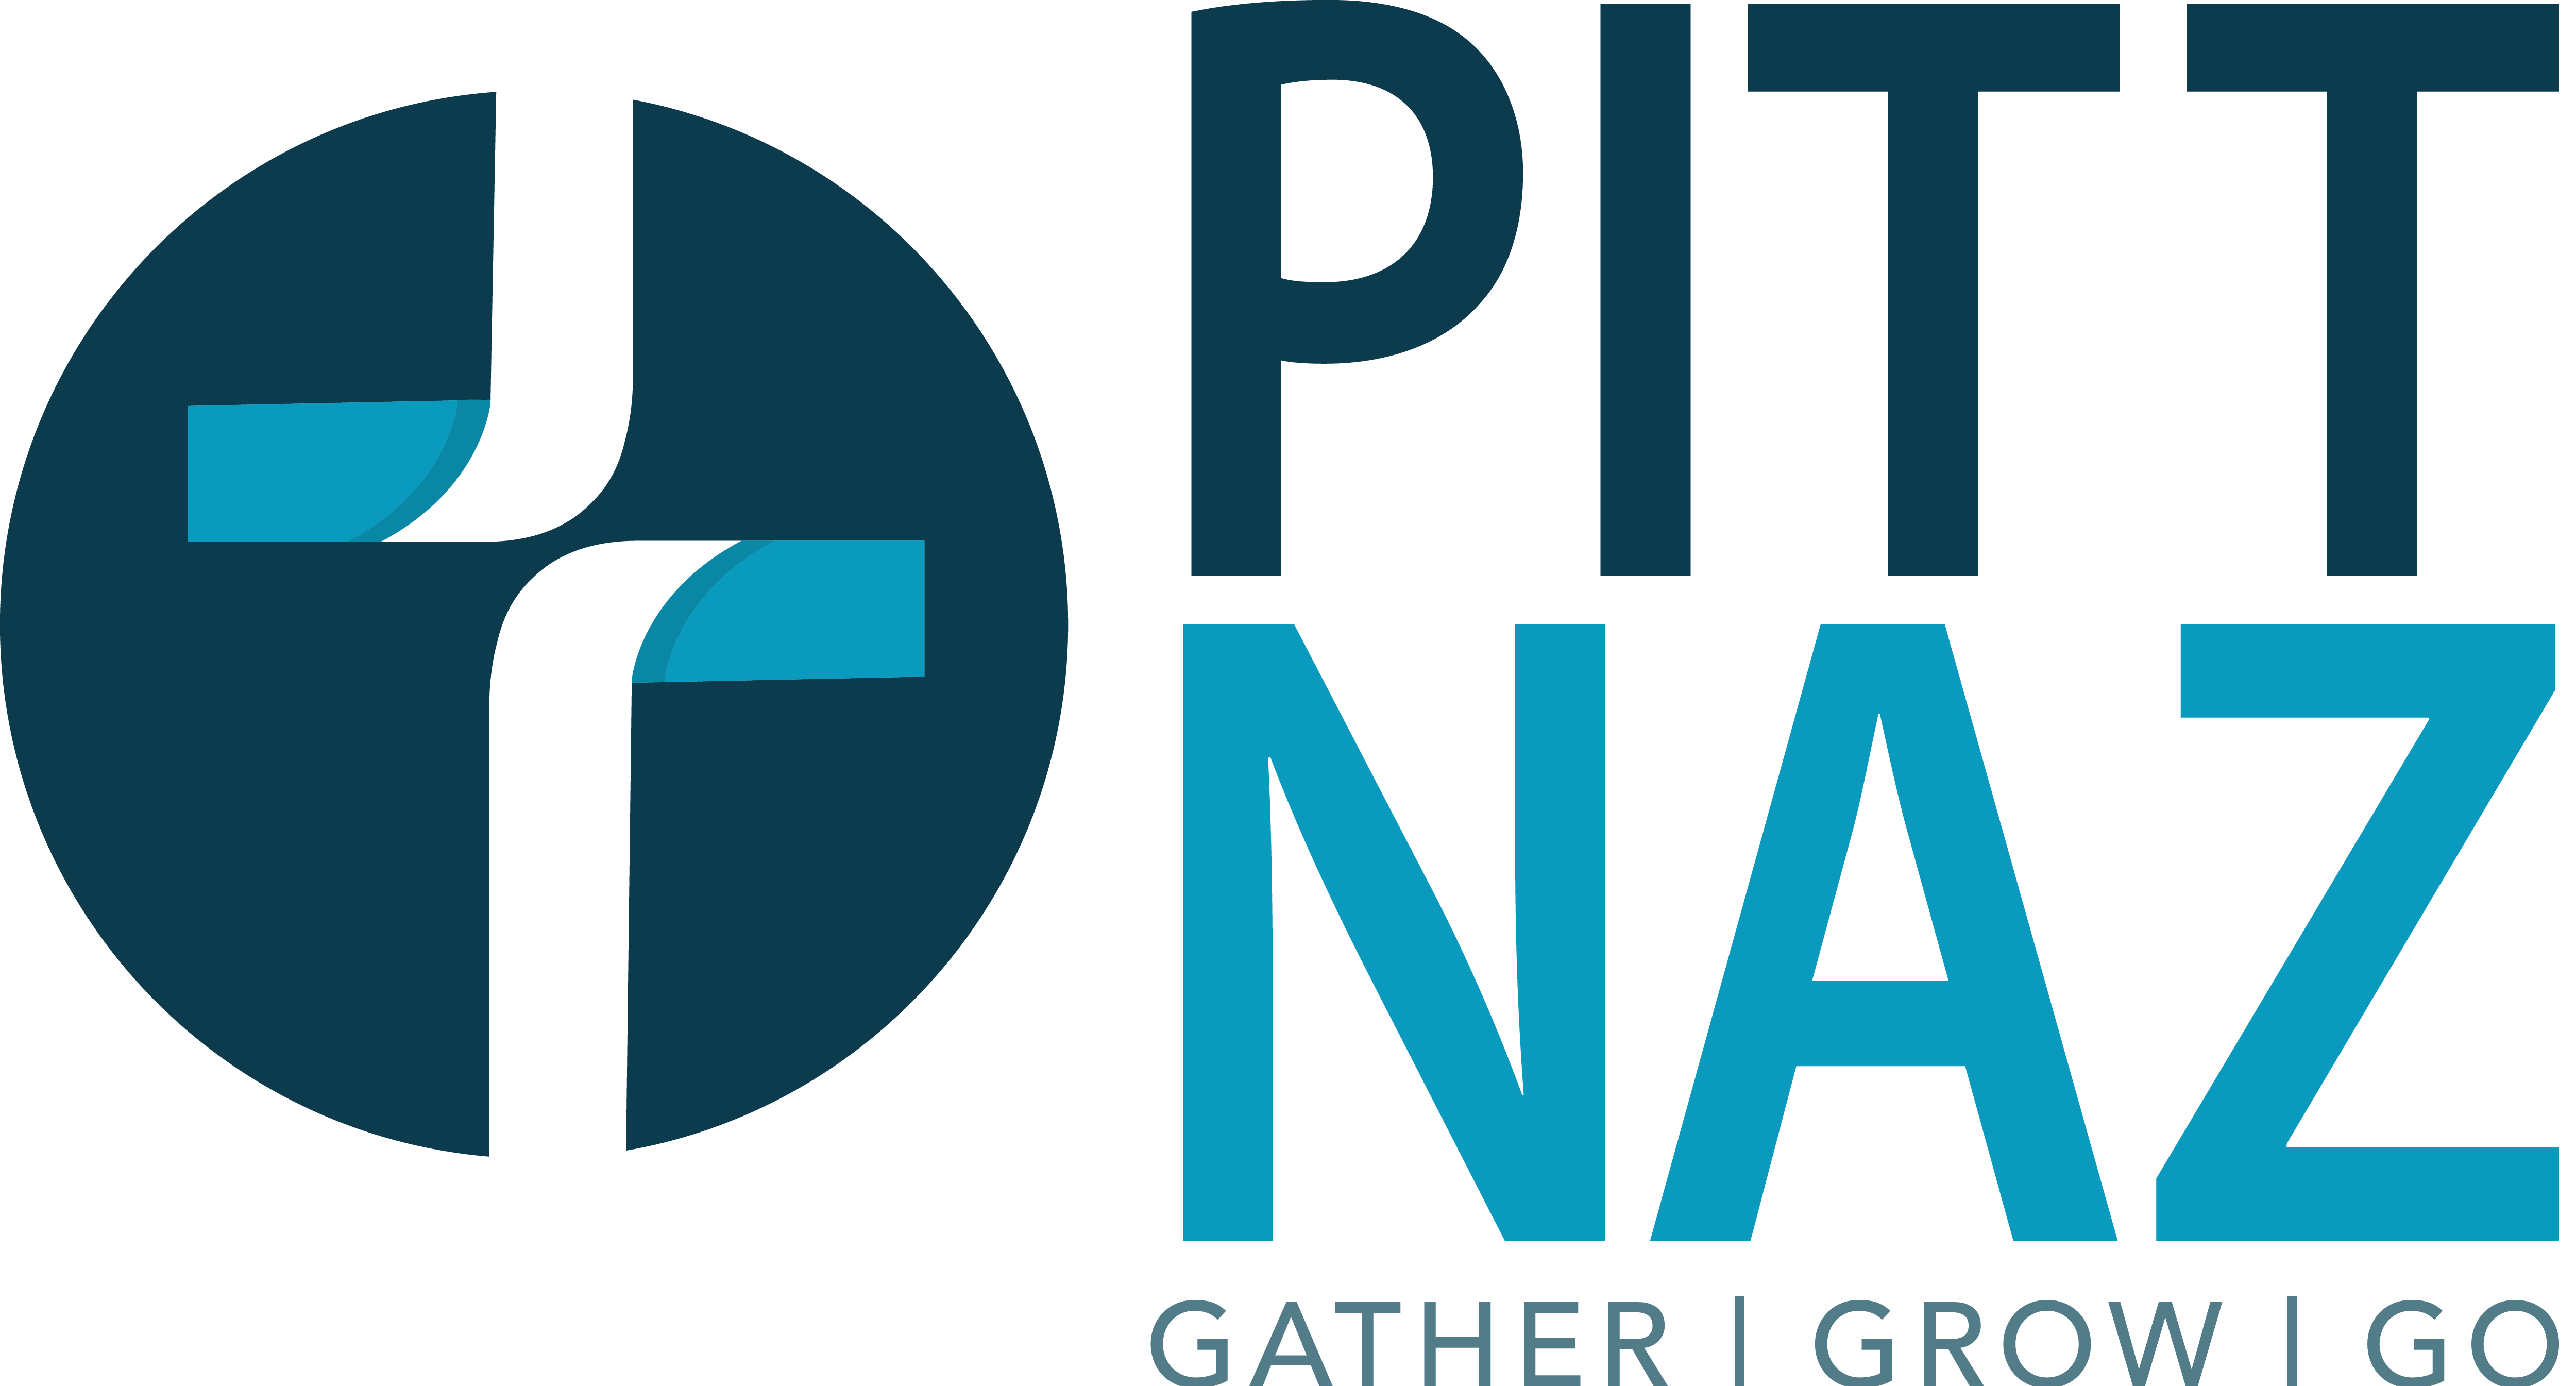 Logo of Pitt Naz